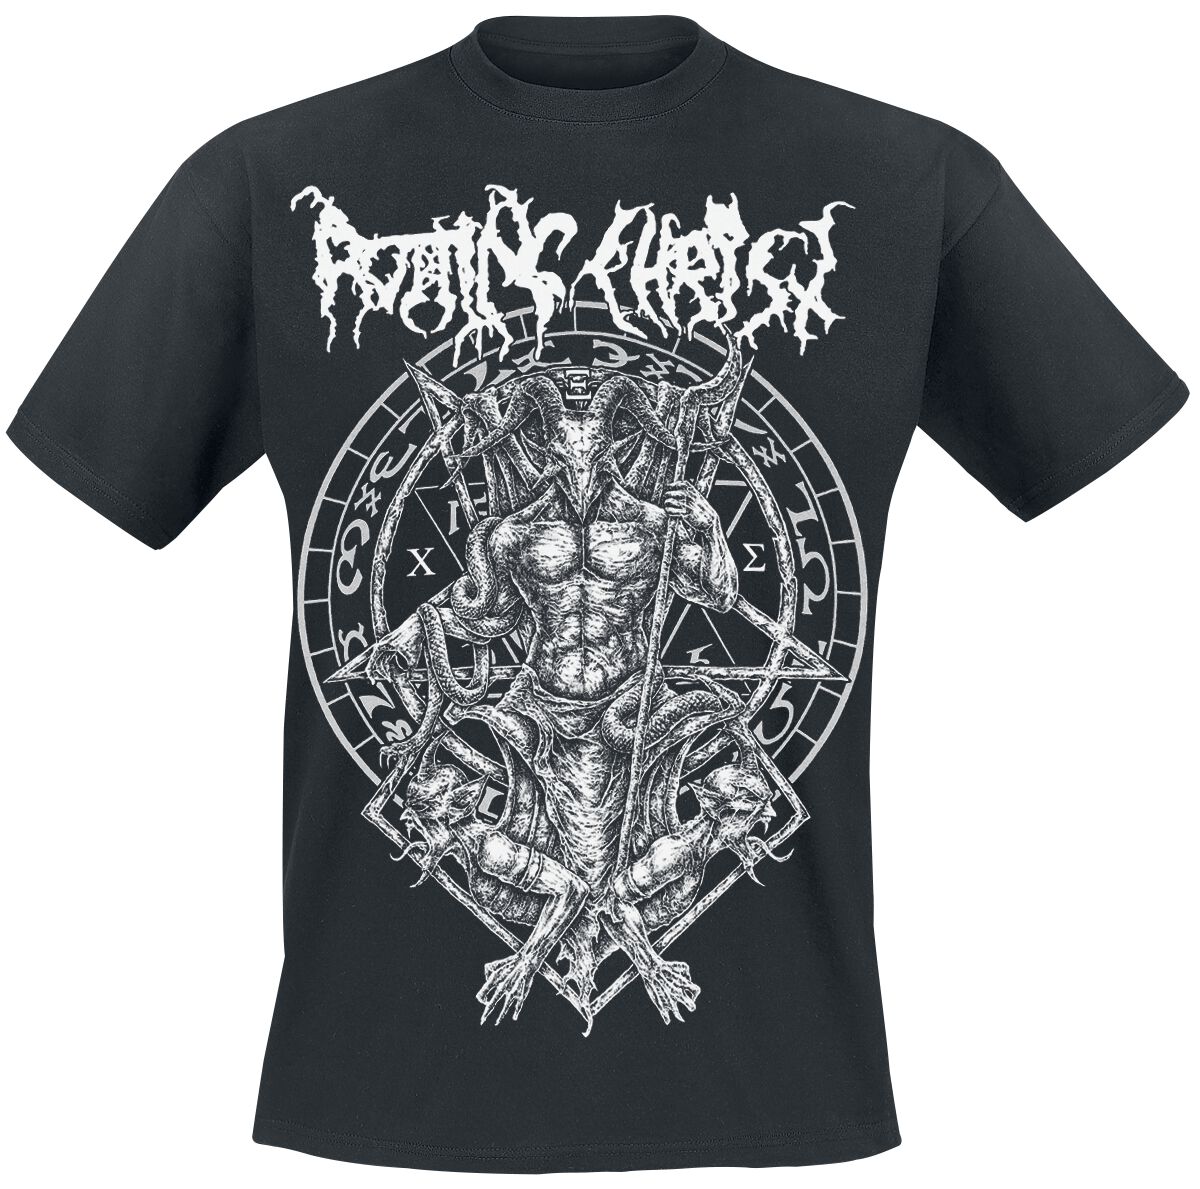 Rotting Christ T-Shirt - Hellenic Black Metal Legions - S bis XXL - für Männer - Größe S - schwarz  - Lizenziertes Merchandise!